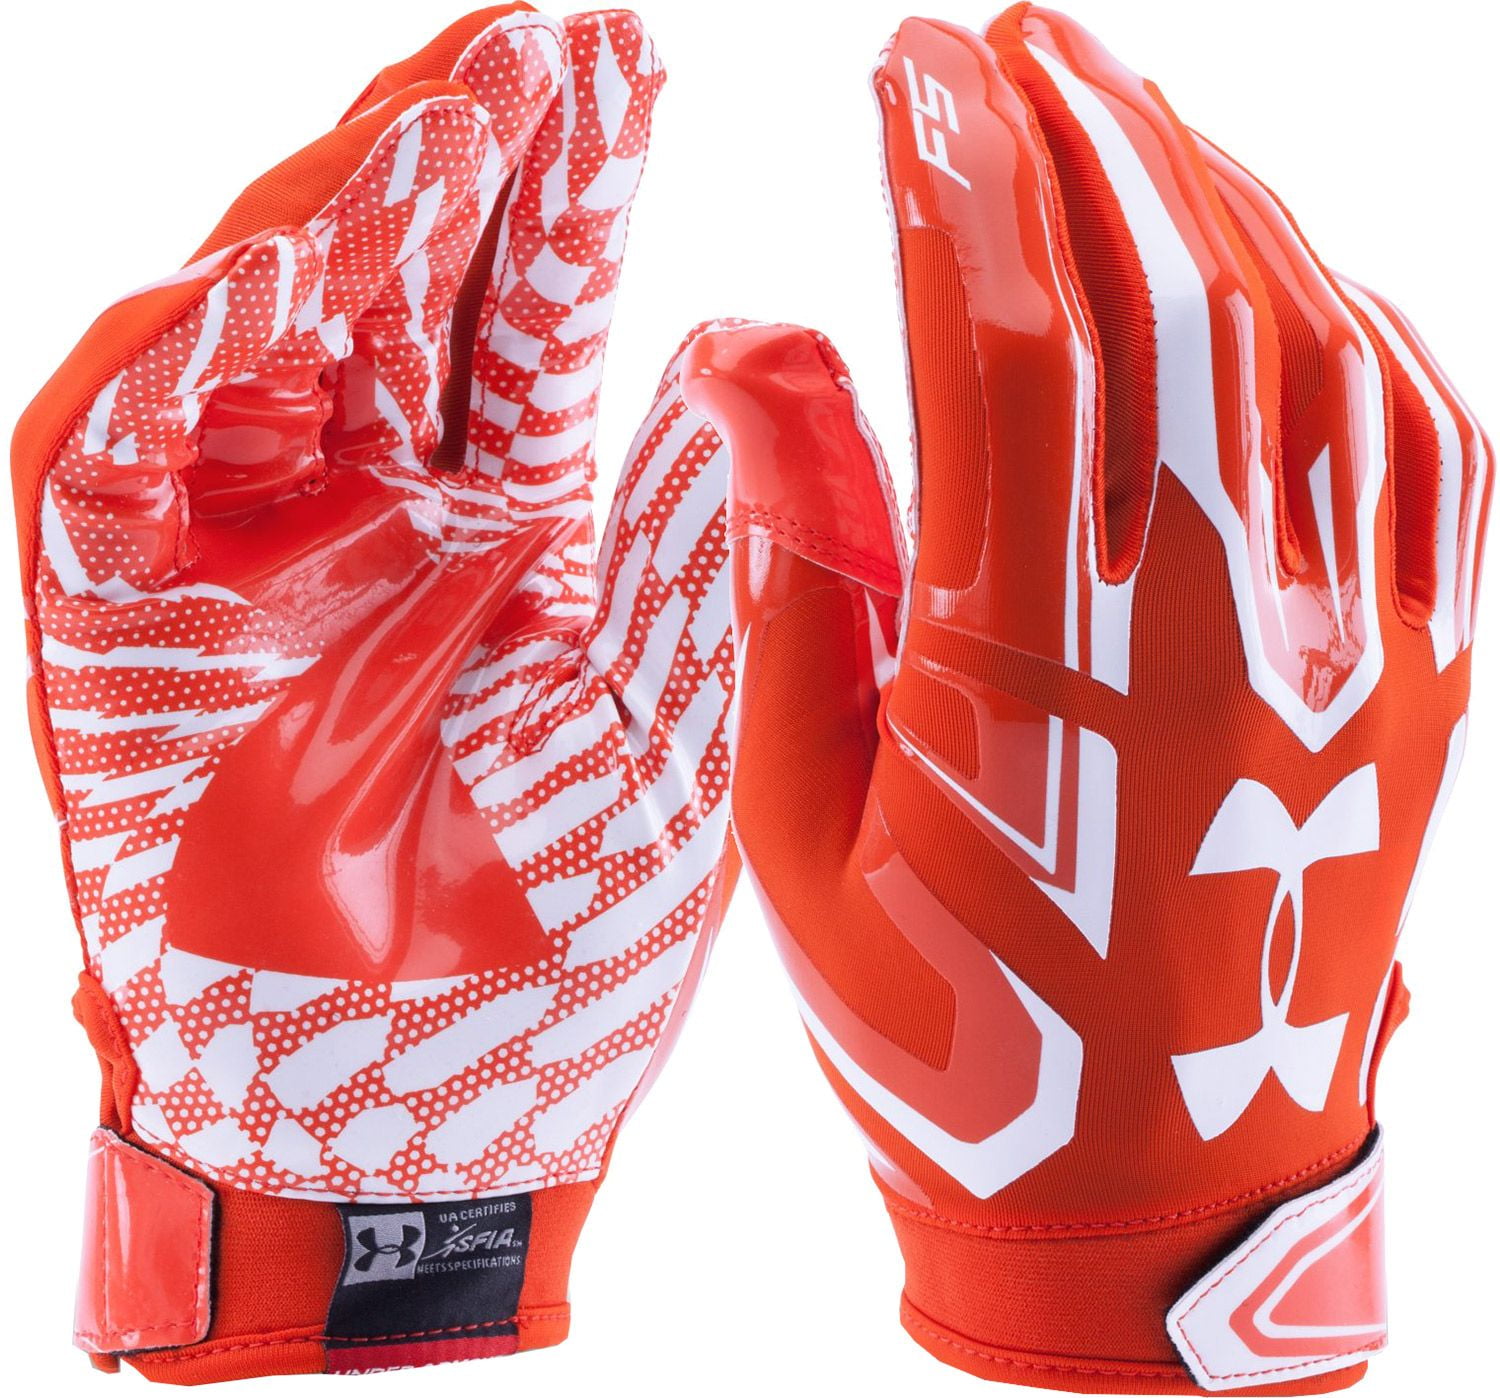 f5 football gloves